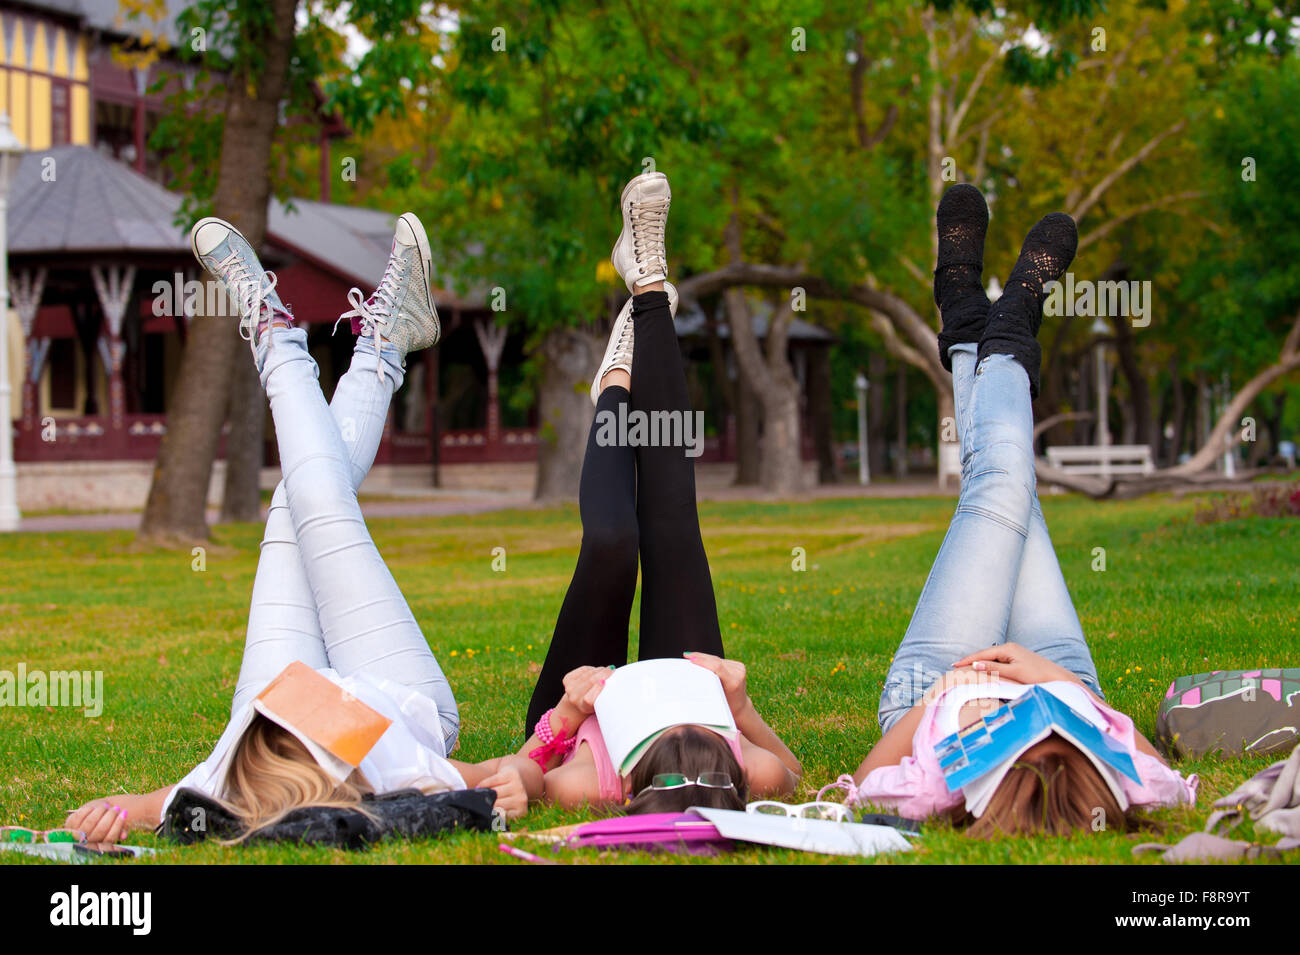 Jeune étudiant de lycée ou collège une pause de l'apprentissage sur l'herbe dans le parc avec ses pieds incliné dans l'air Banque D'Images